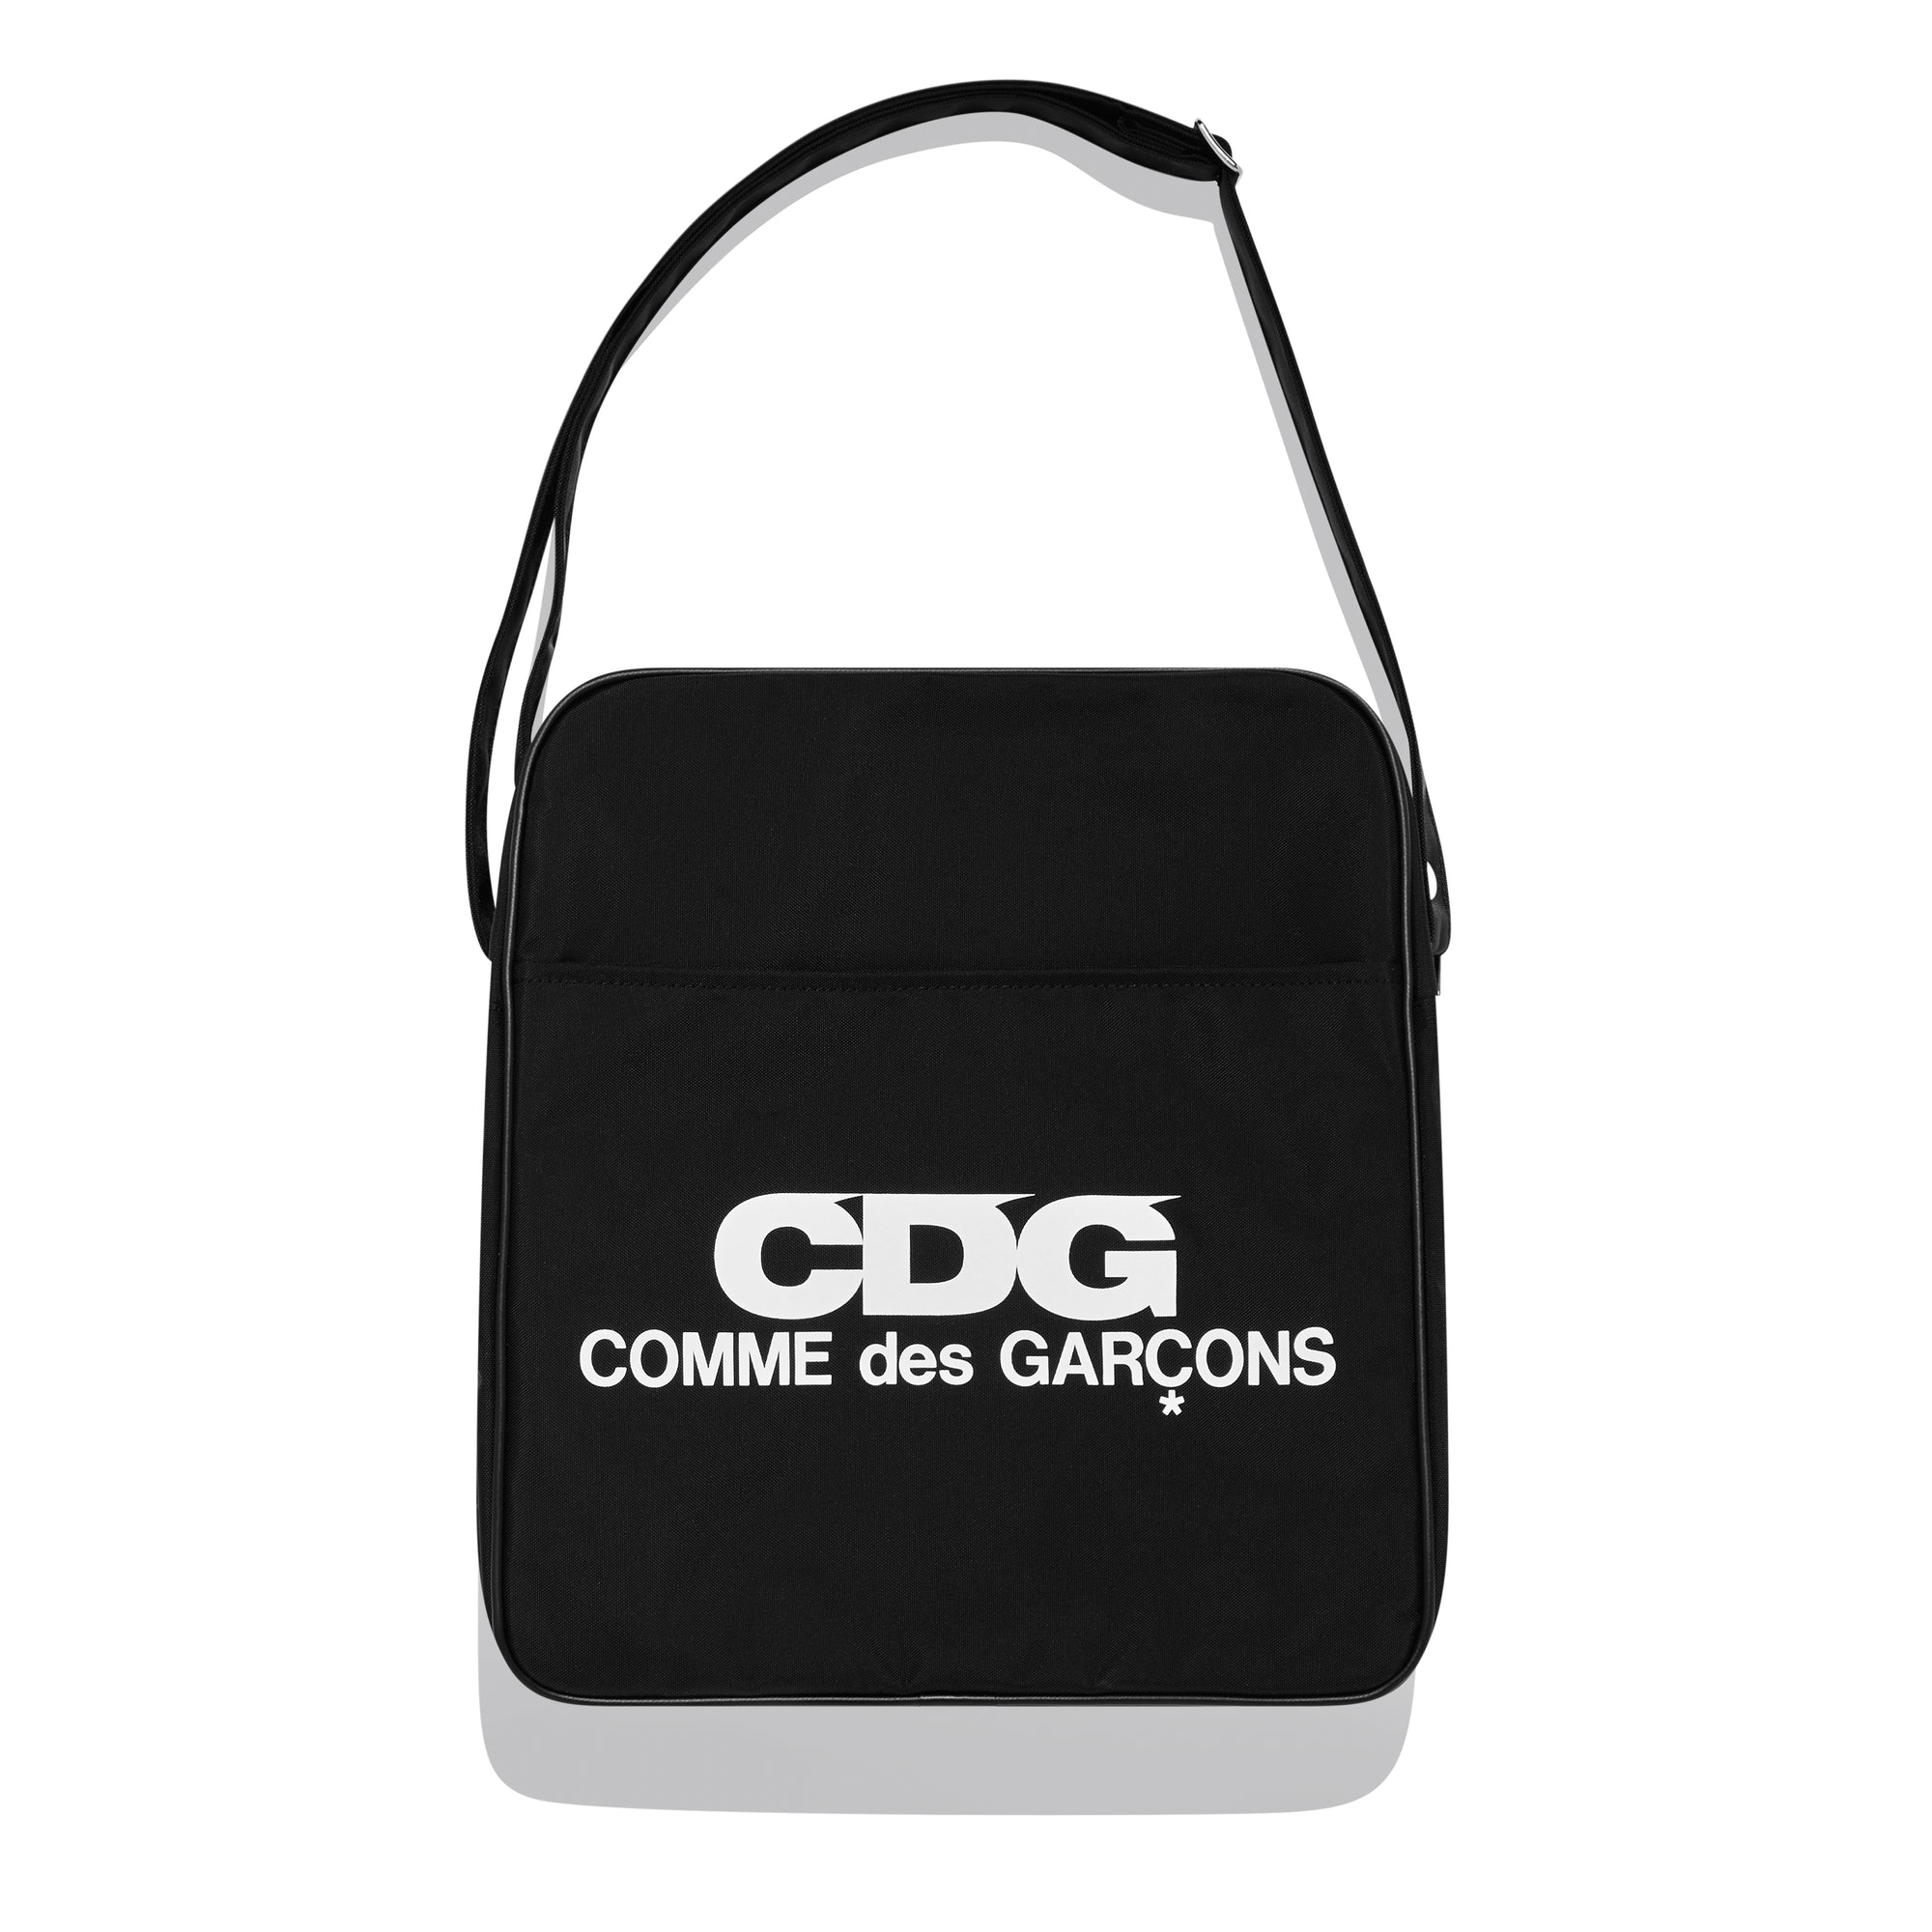 CDG - Large Shoulder Bag - (Black) view 1